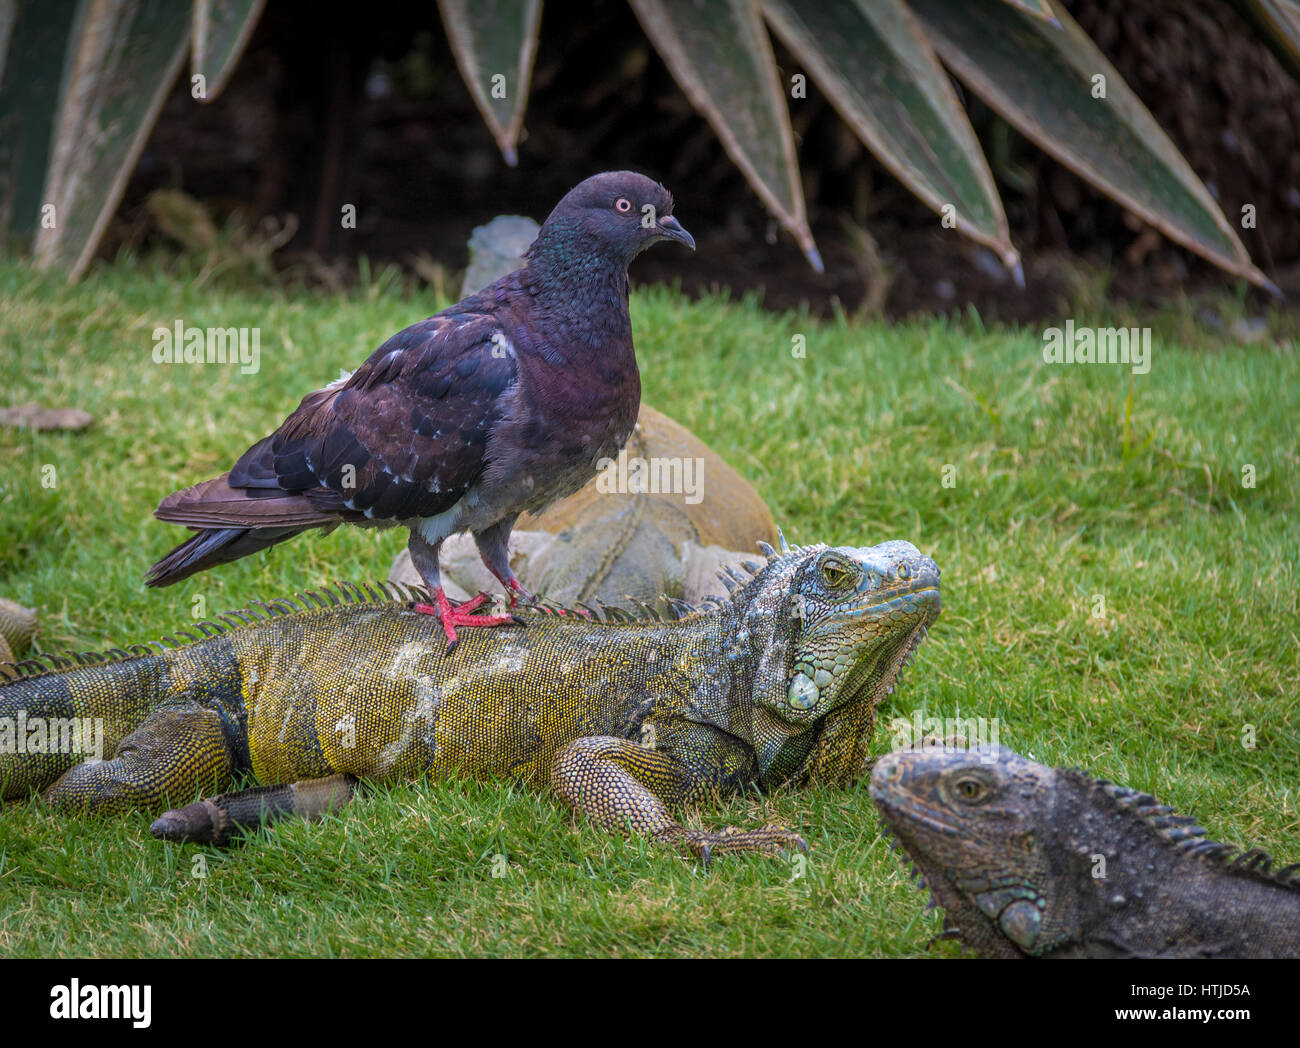 Pigeon riding an iguana at Seminario Park - Guayaquil, Ecuador Stock Photo